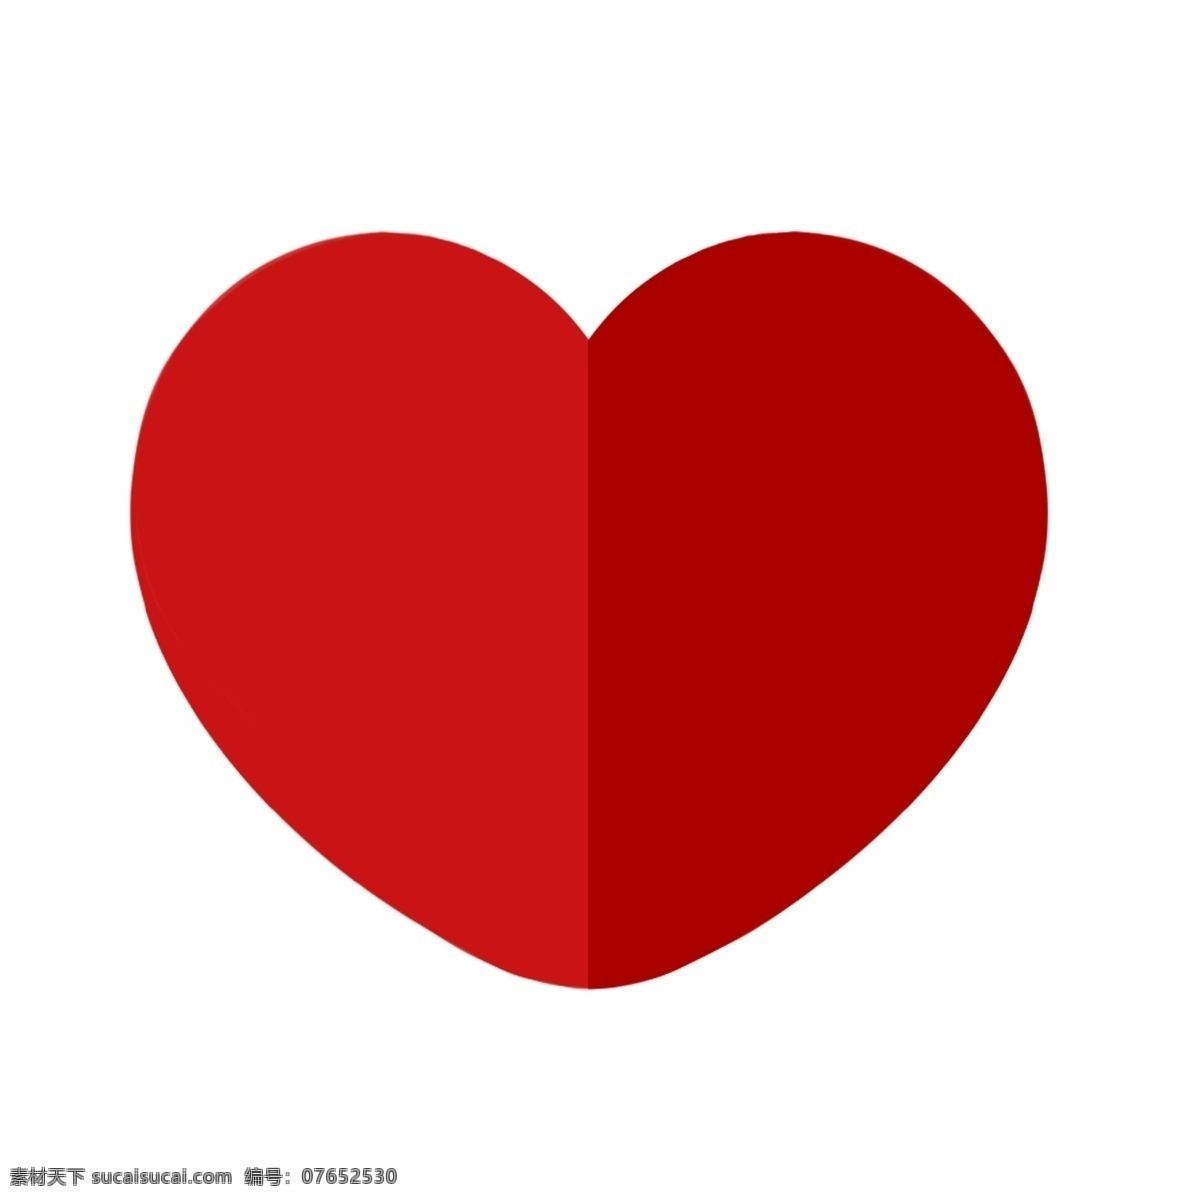 红色 卡通 折纸 爱心 红色折纸爱心 浪漫爱心 公益广告 可爱心形 捐款爱心 爱心公益